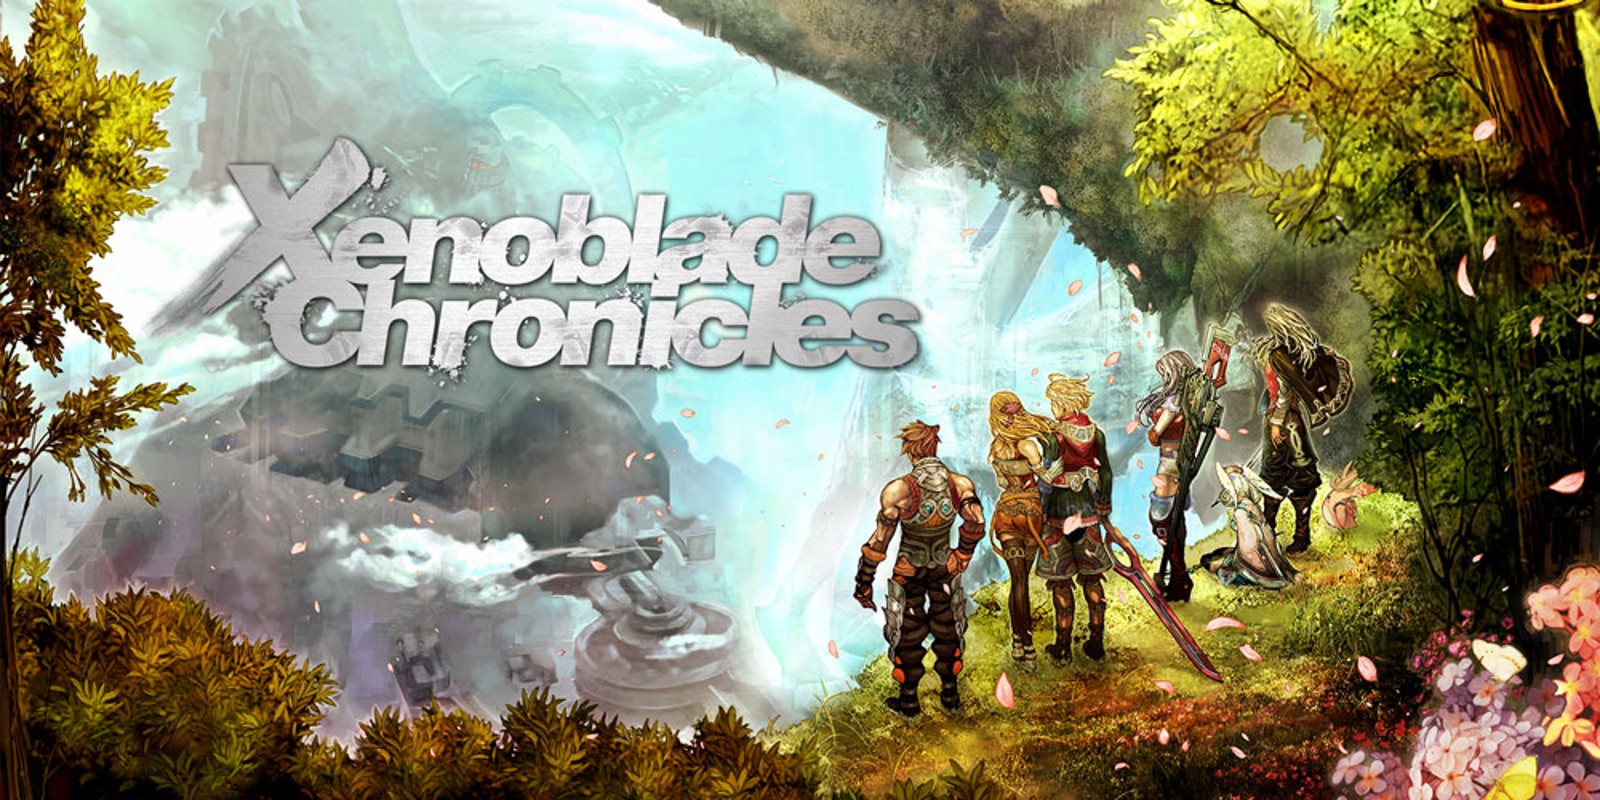 Com’è cambiato negli anni Xenoblade Chronicles? Wii vs new 3DS vs Switch, video confronto